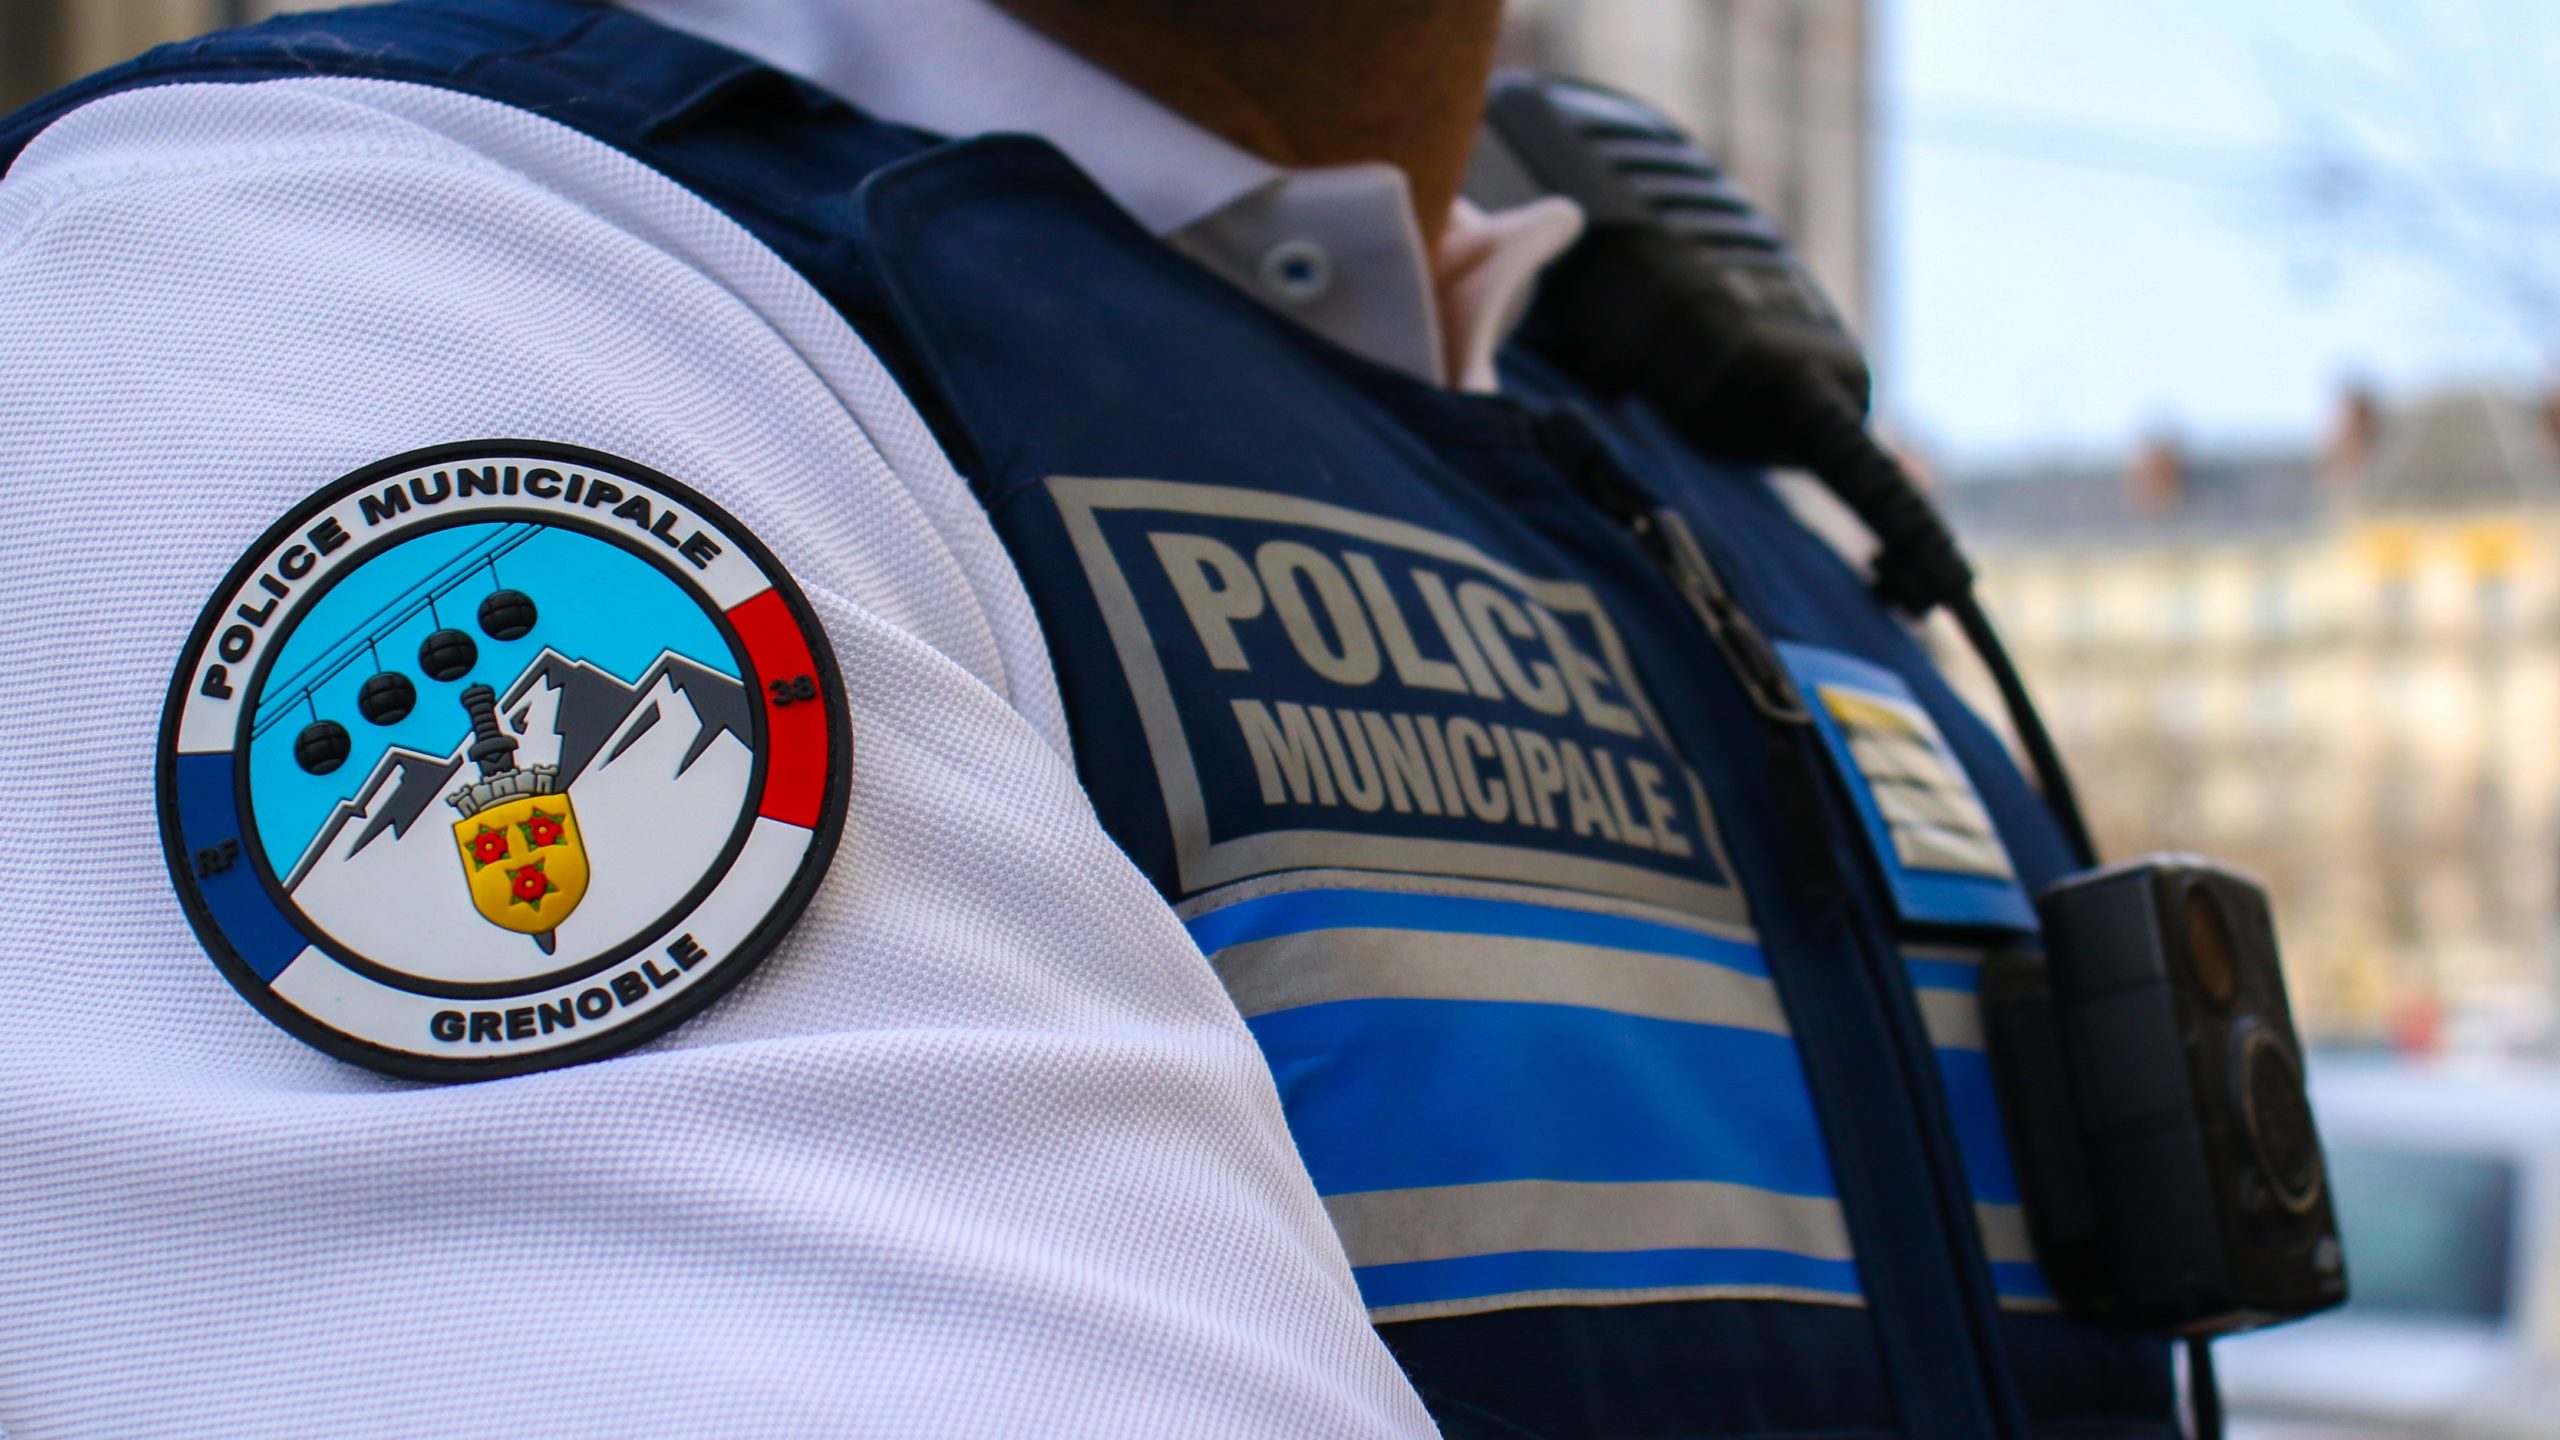 Insigne Police Municipale 